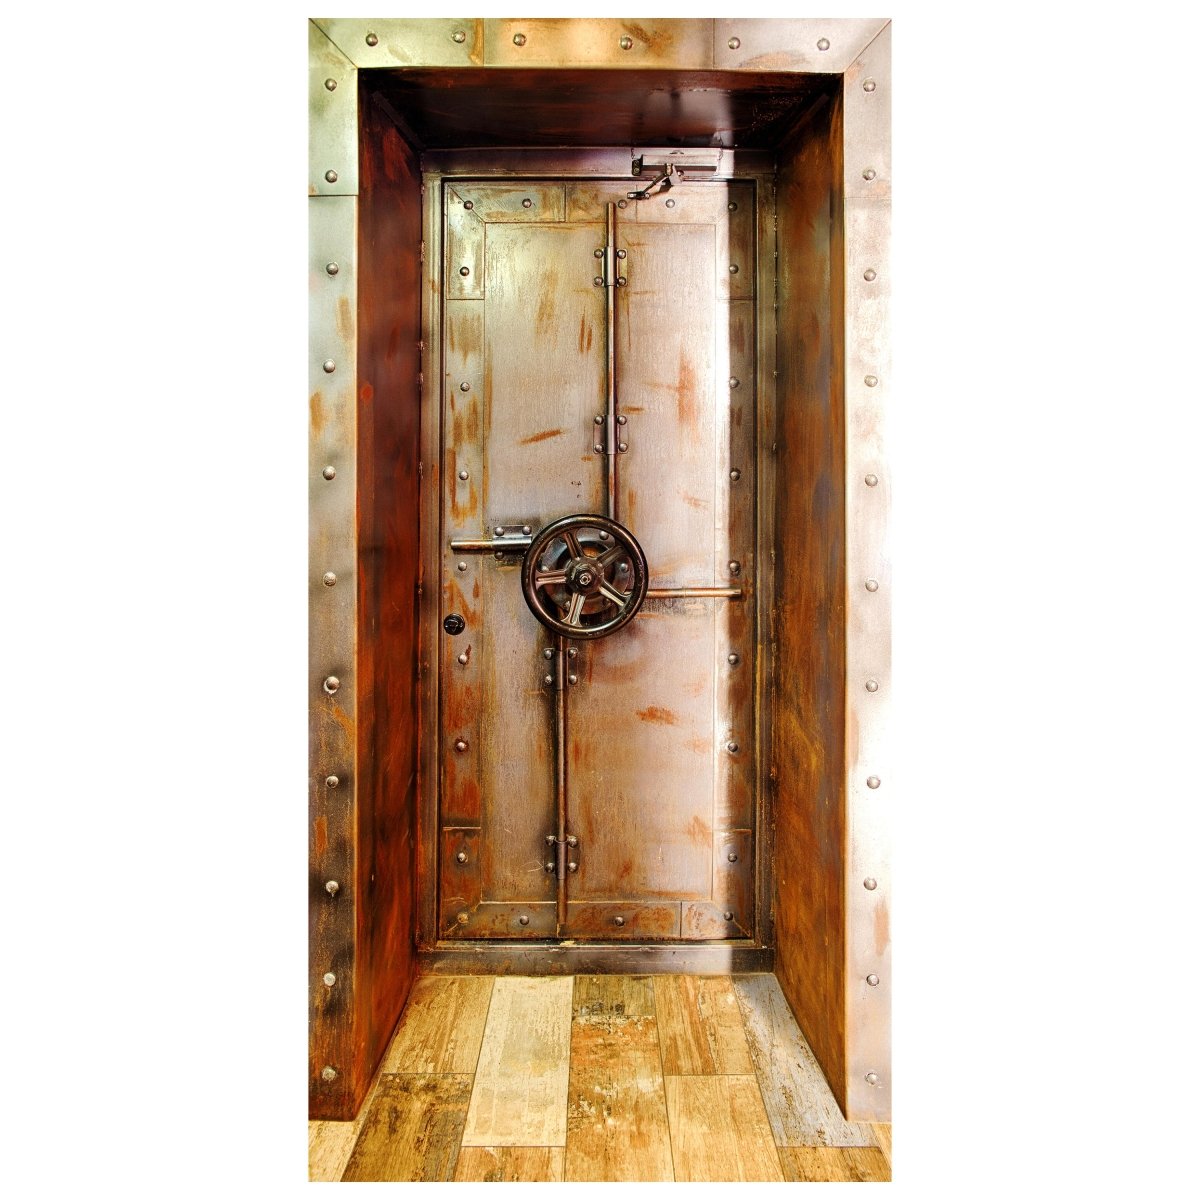 Türtapete rostige Metall Tür mit Dreh Rad, Tresor M1383 - Bild 2